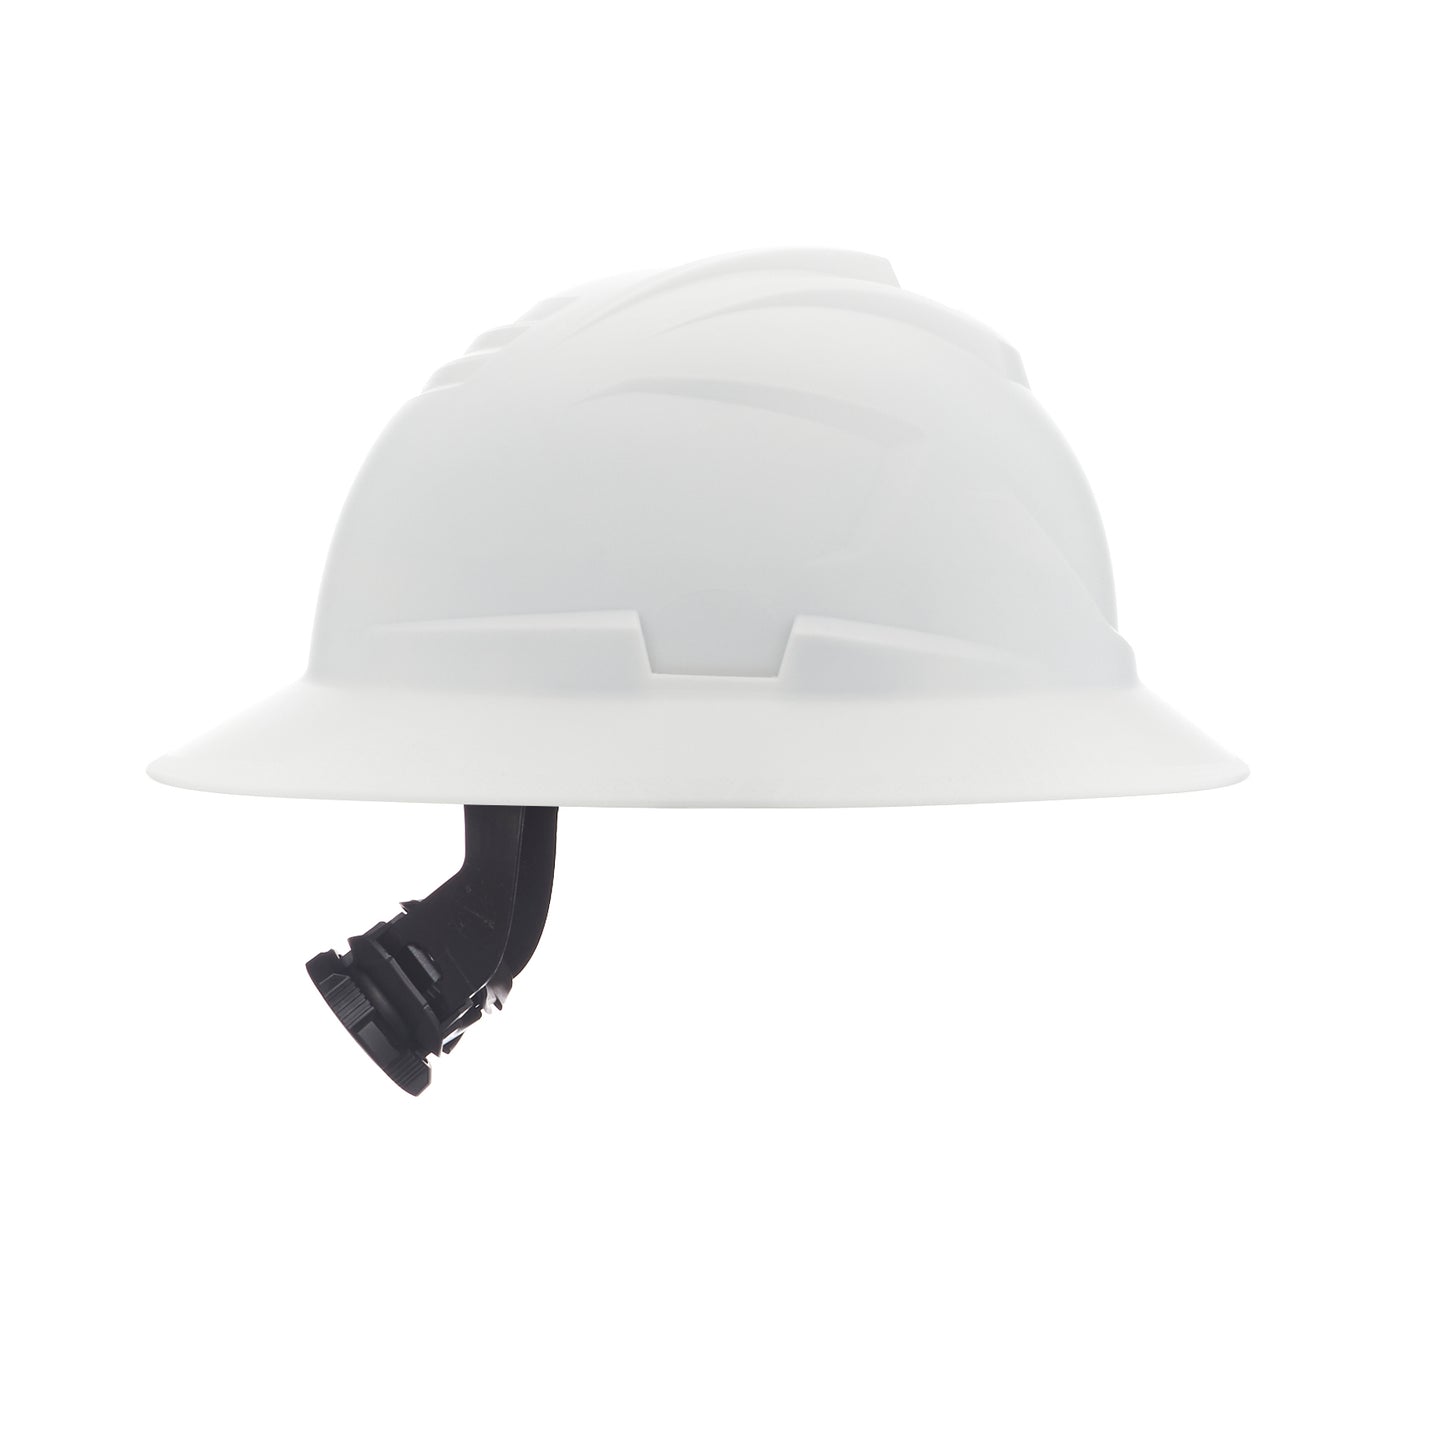 MSA V-Gard C1 Hard Hat - White